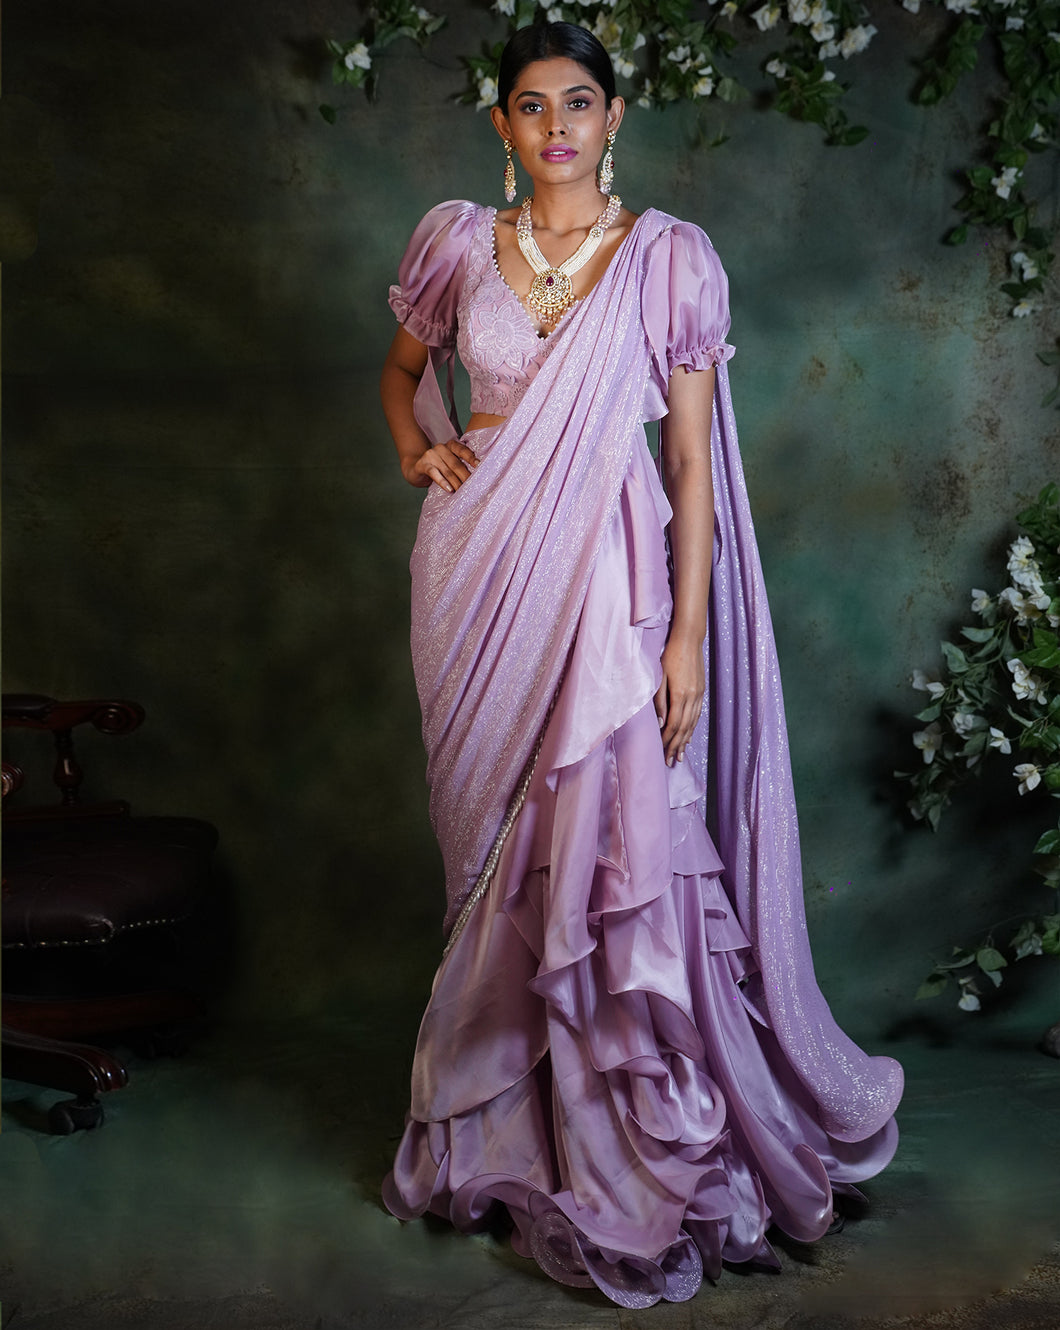 The Lilac Ruffle Sari